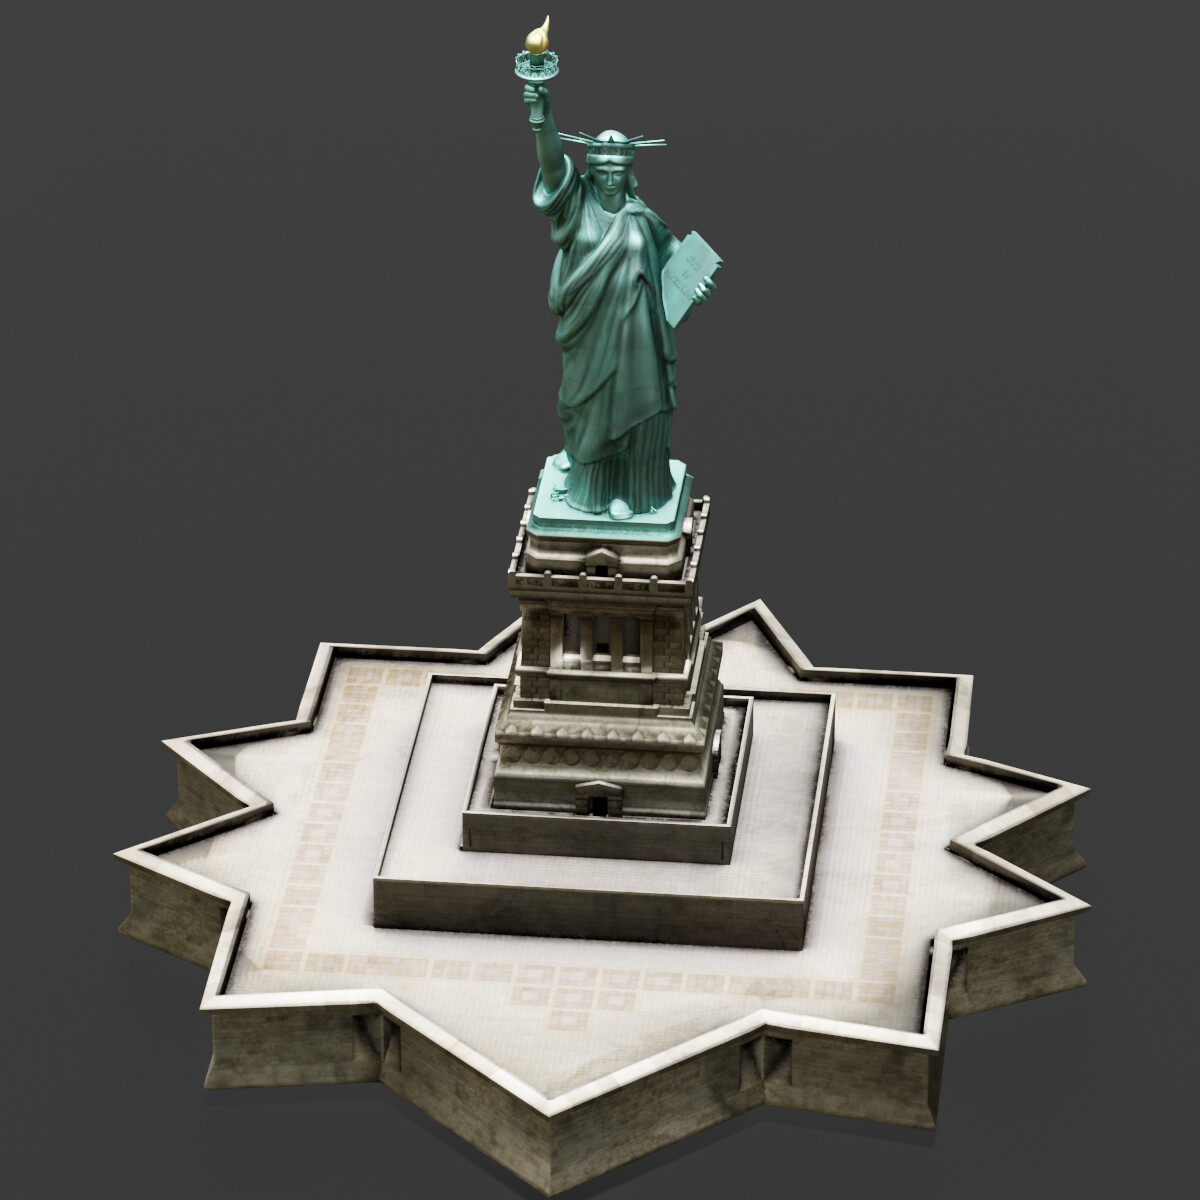 Statue of Liberty 3D model